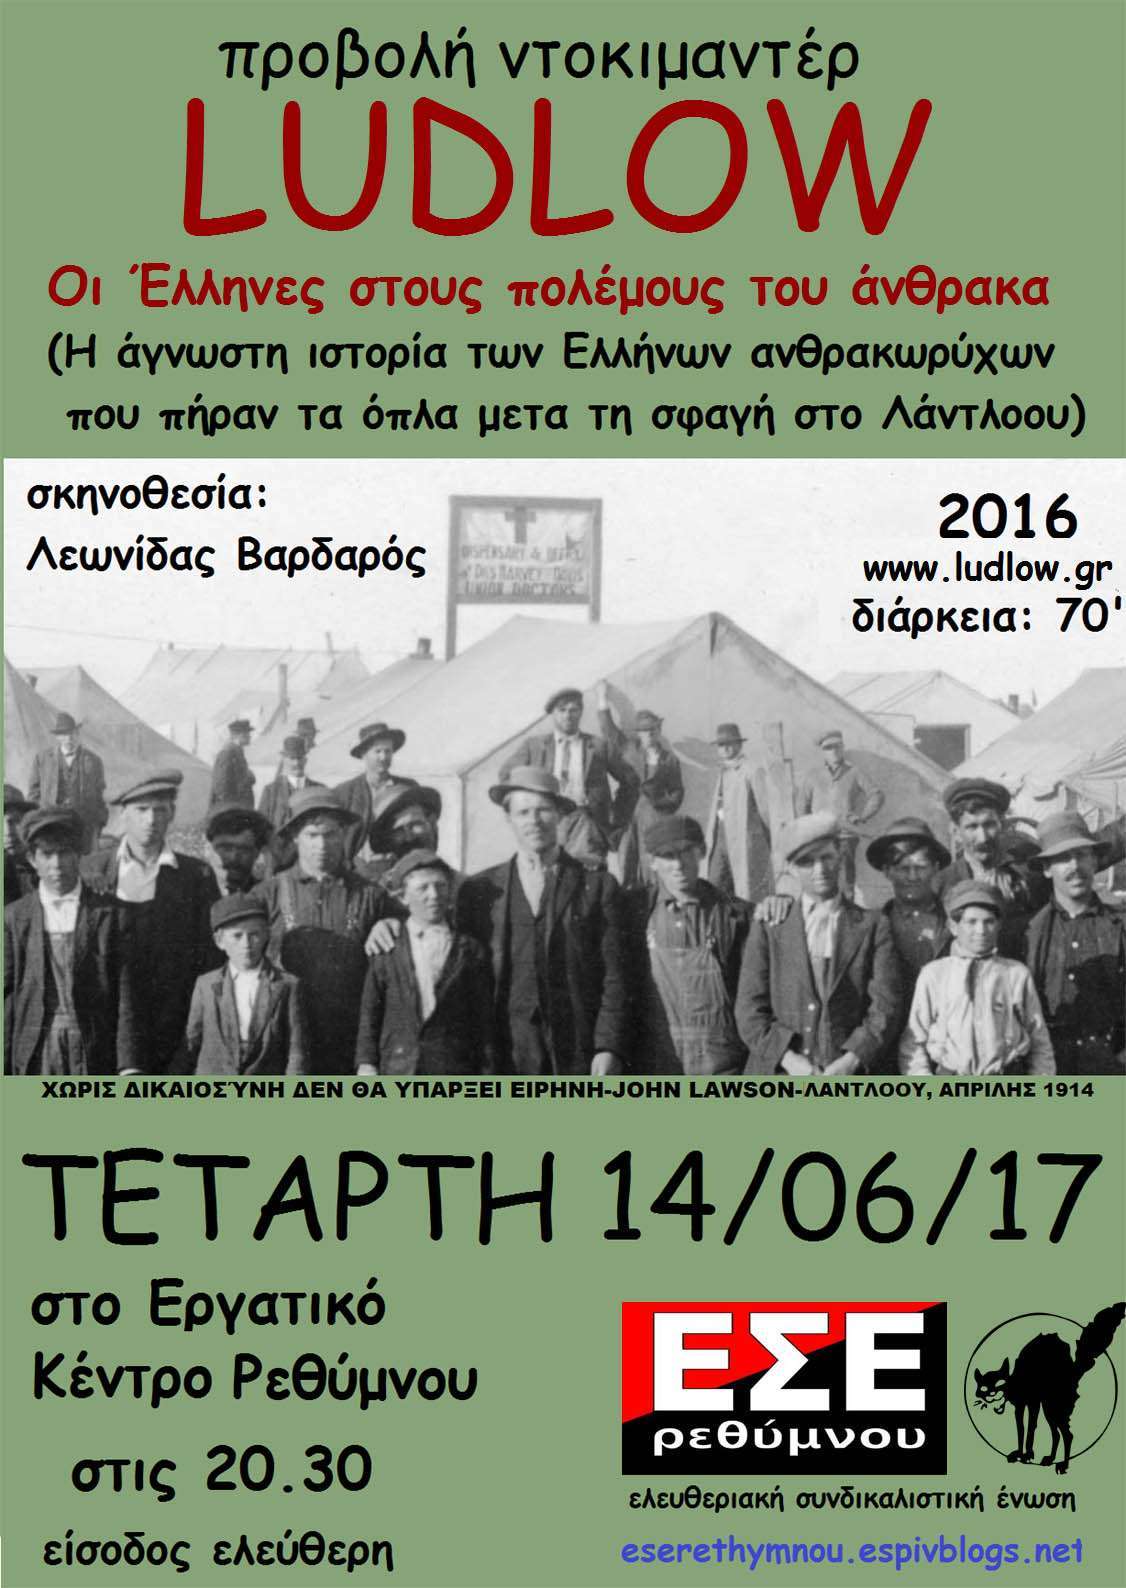 ΕΣΕ Ρεθύμνου: Προβολή “Ludlow: Οι Έλληνες στους πολέμους του άνθρακα” [Τετάρτη 14/06, 20:30]